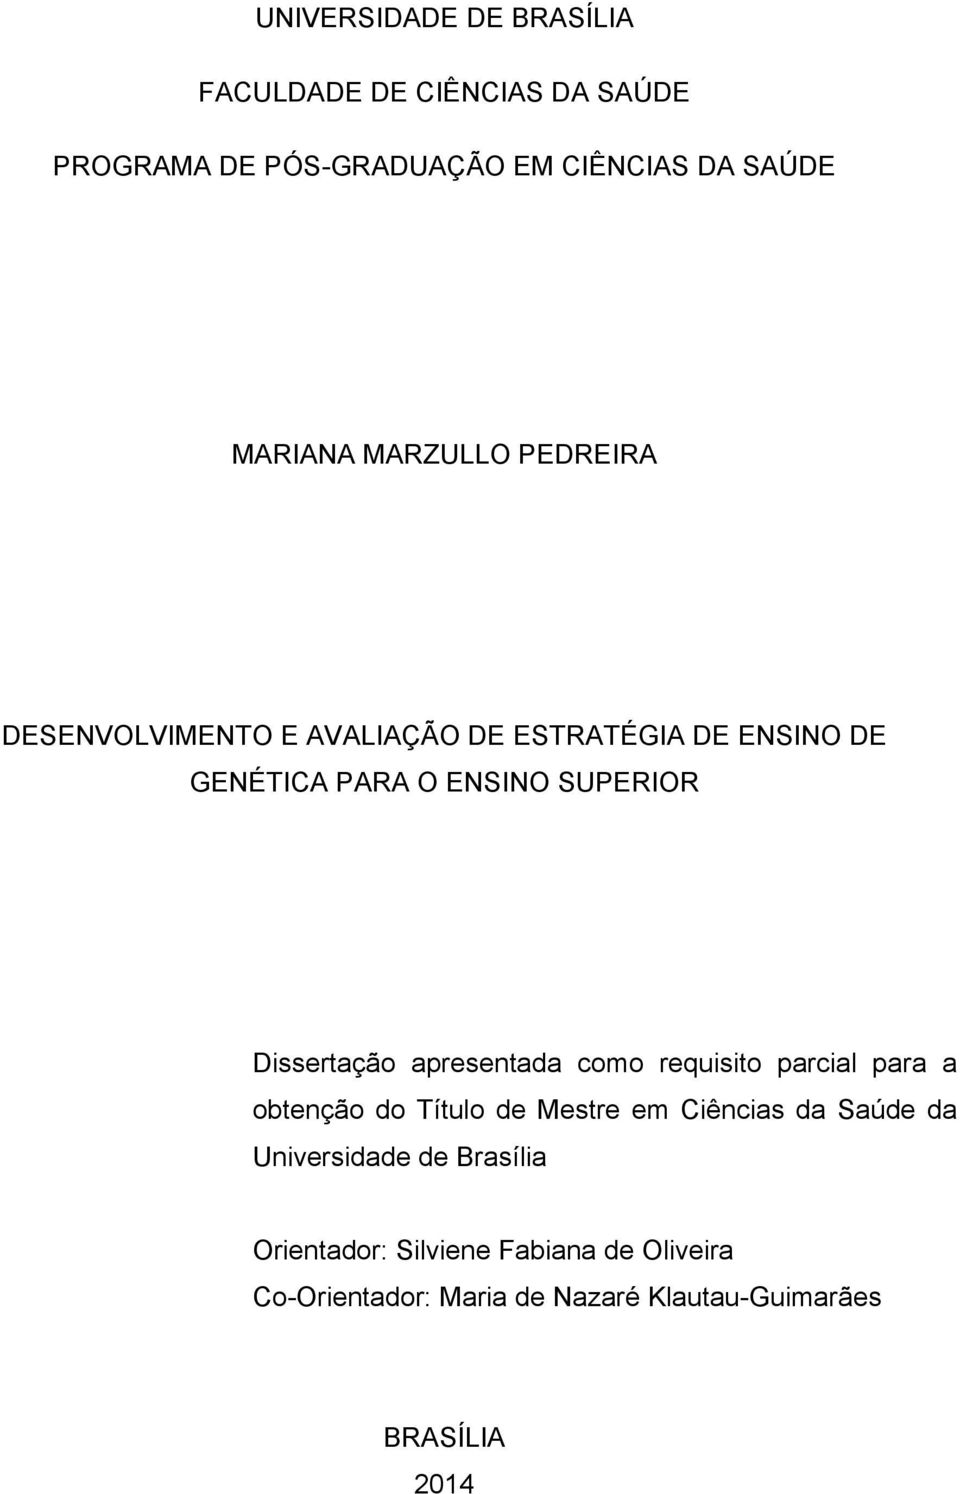 Dissertação apresentada como requisito parcial para a obtenção do Título de Mestre em Ciências da Saúde da